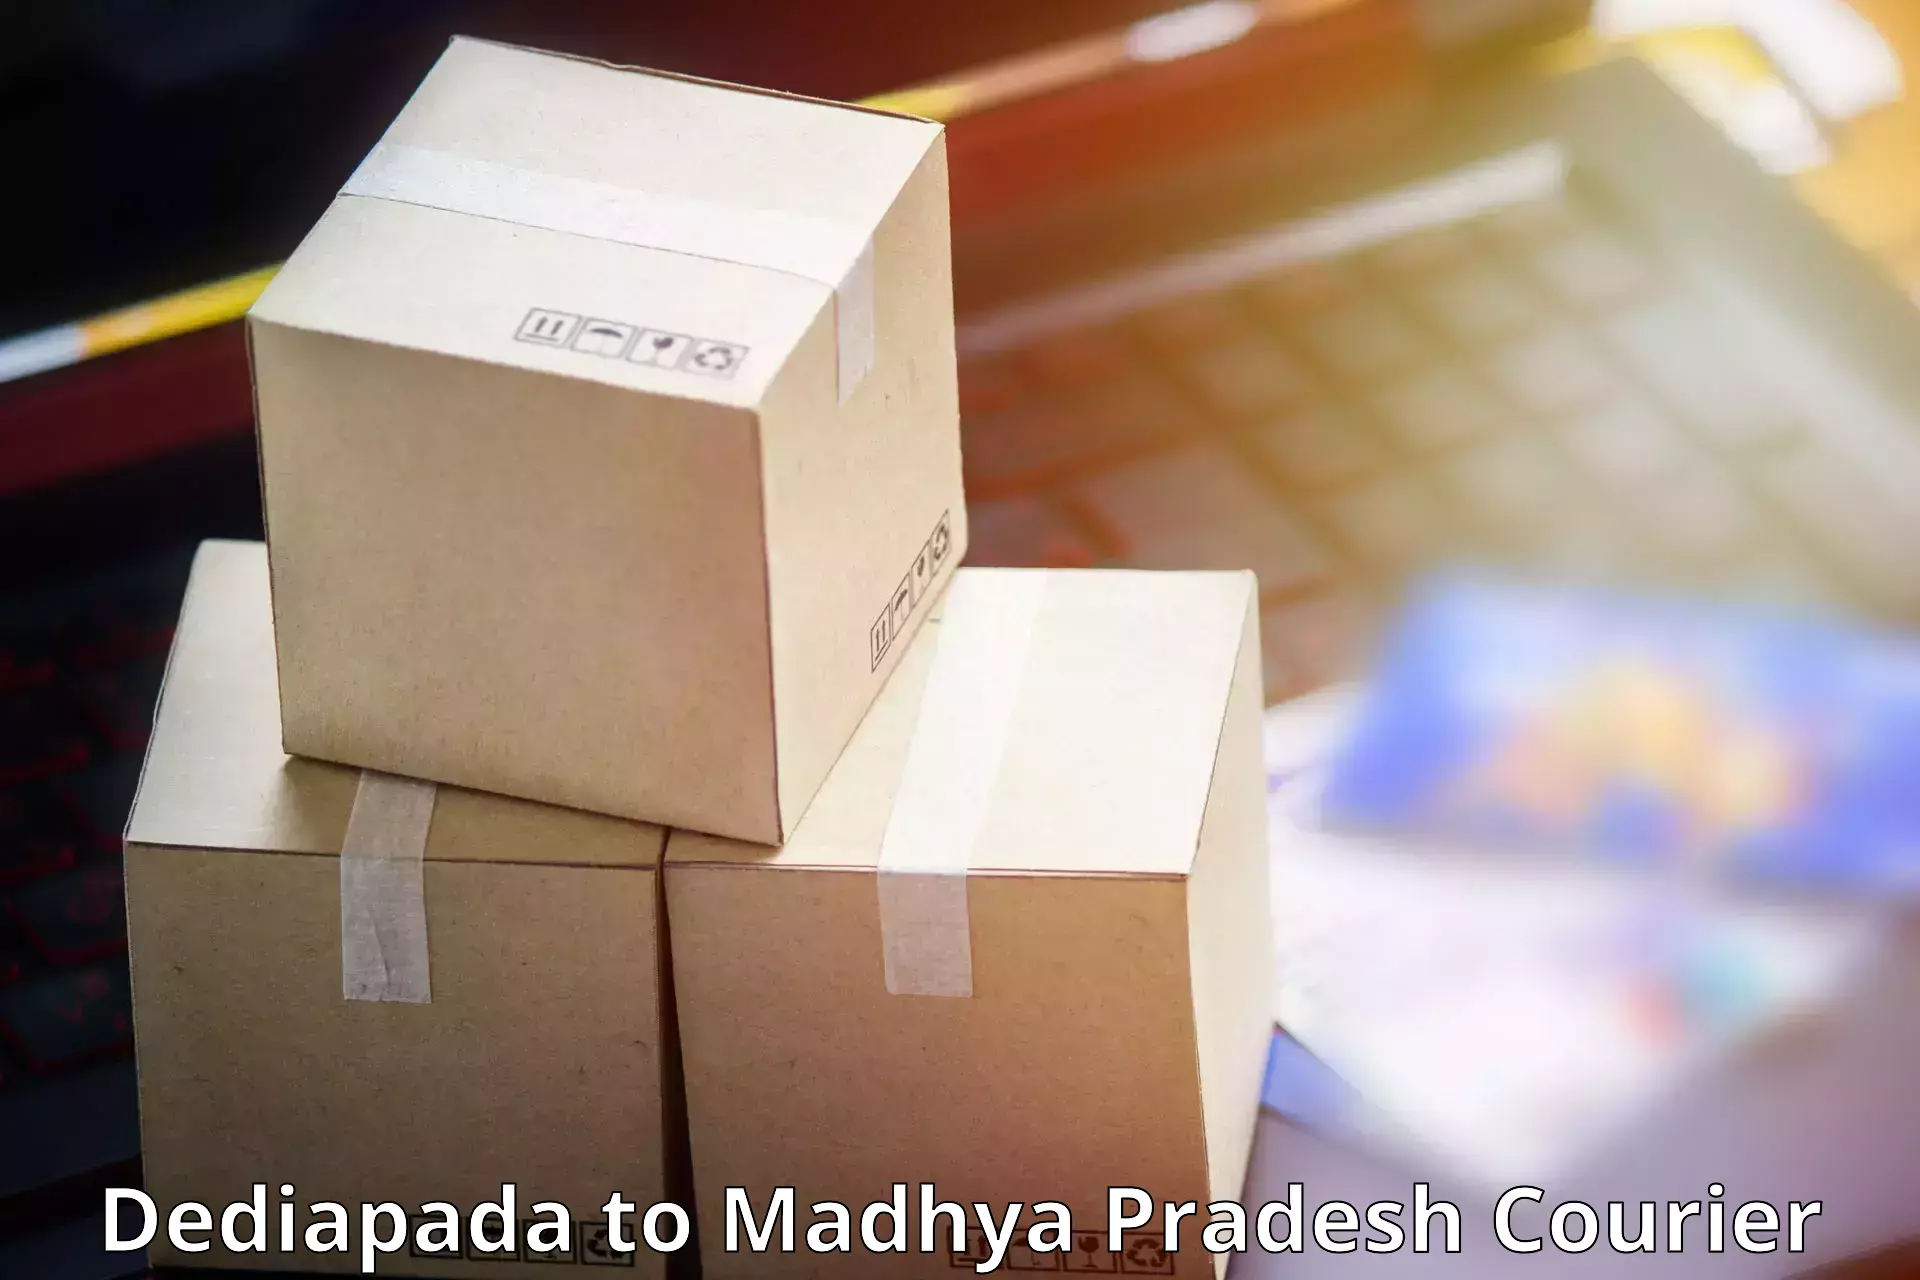 Premium courier services Dediapada to Nagda